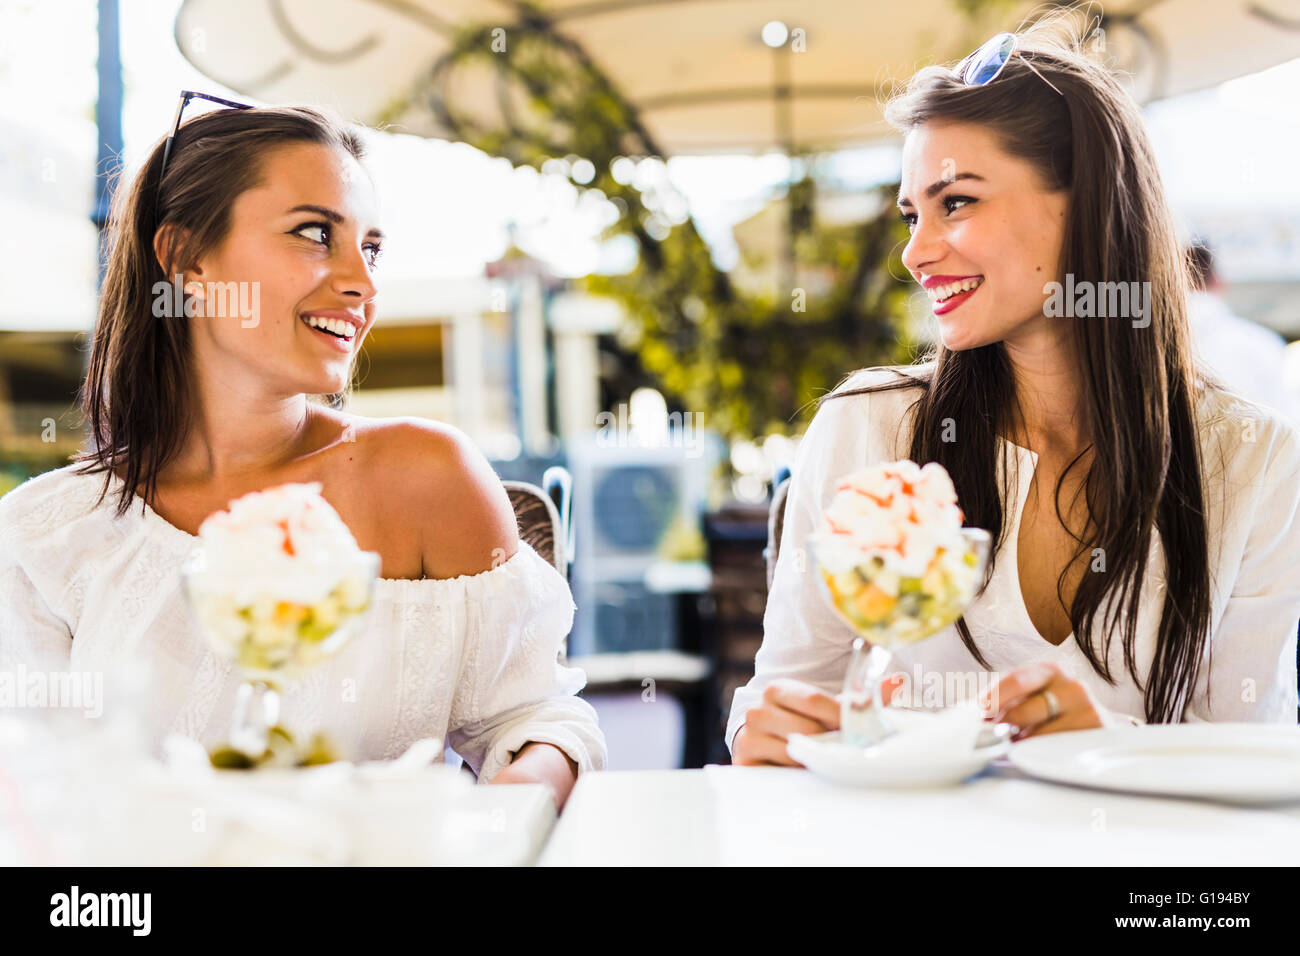 Zwei schöne junge Frauen Lächeln auf den Lippen und einen Obstsalat in ein Restaurant im freien Stockfoto